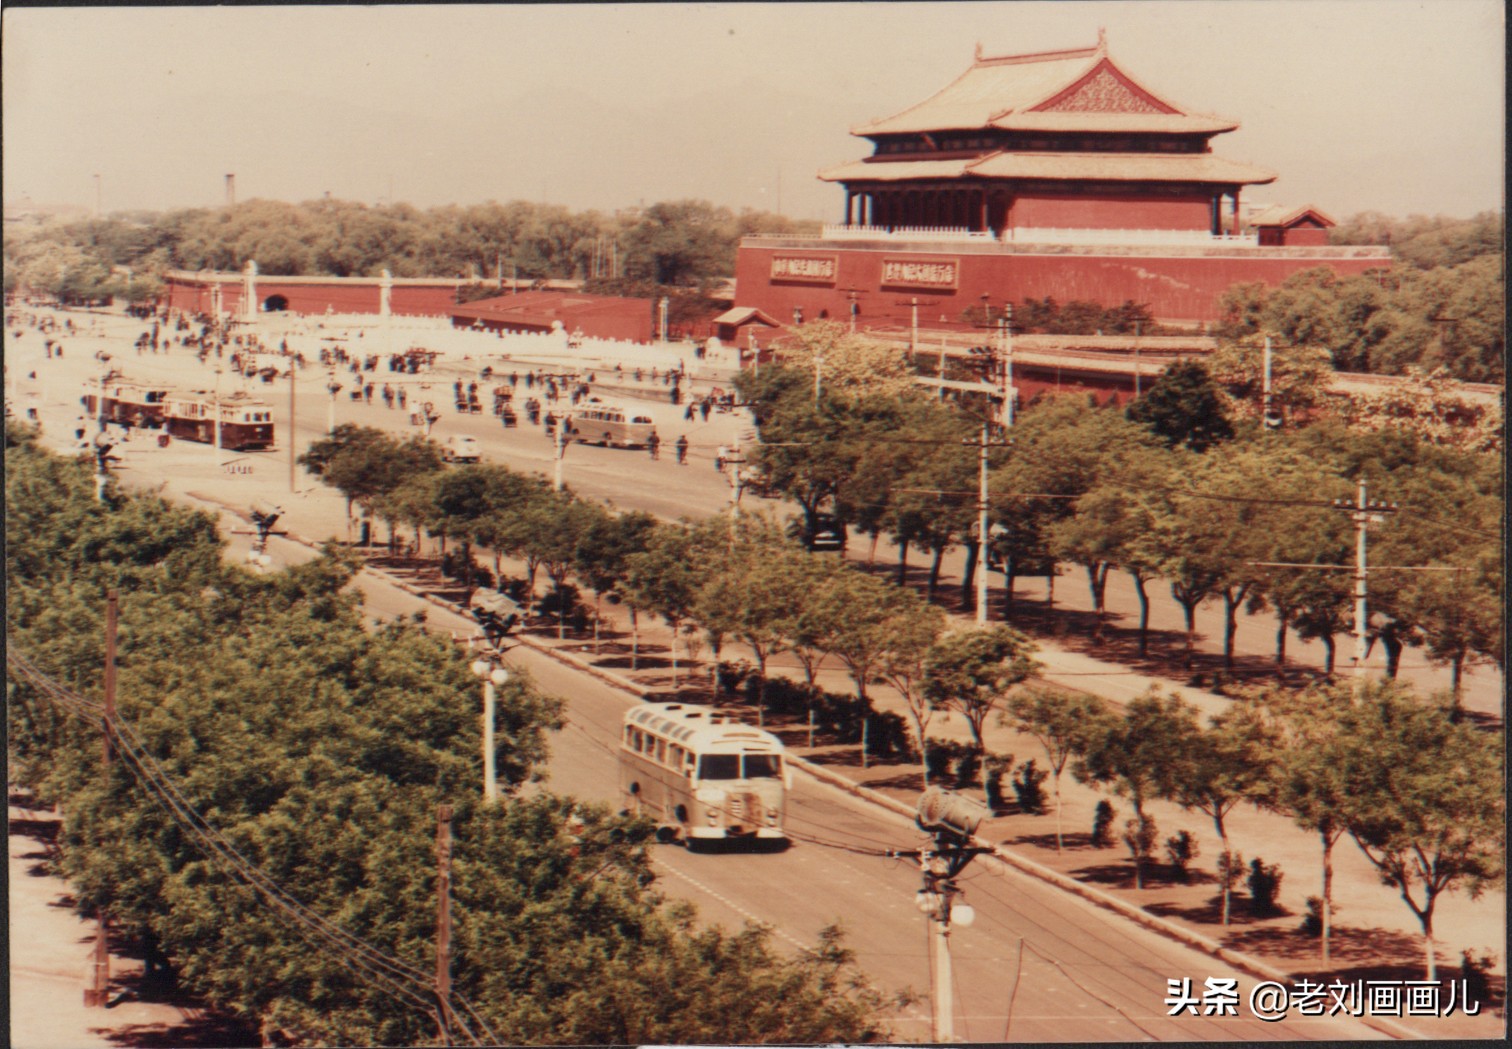 【携程攻略】北京天安门城楼景点,天门门城楼是天安门的重要组成部分，在城楼上你能感受开国大典的那种…